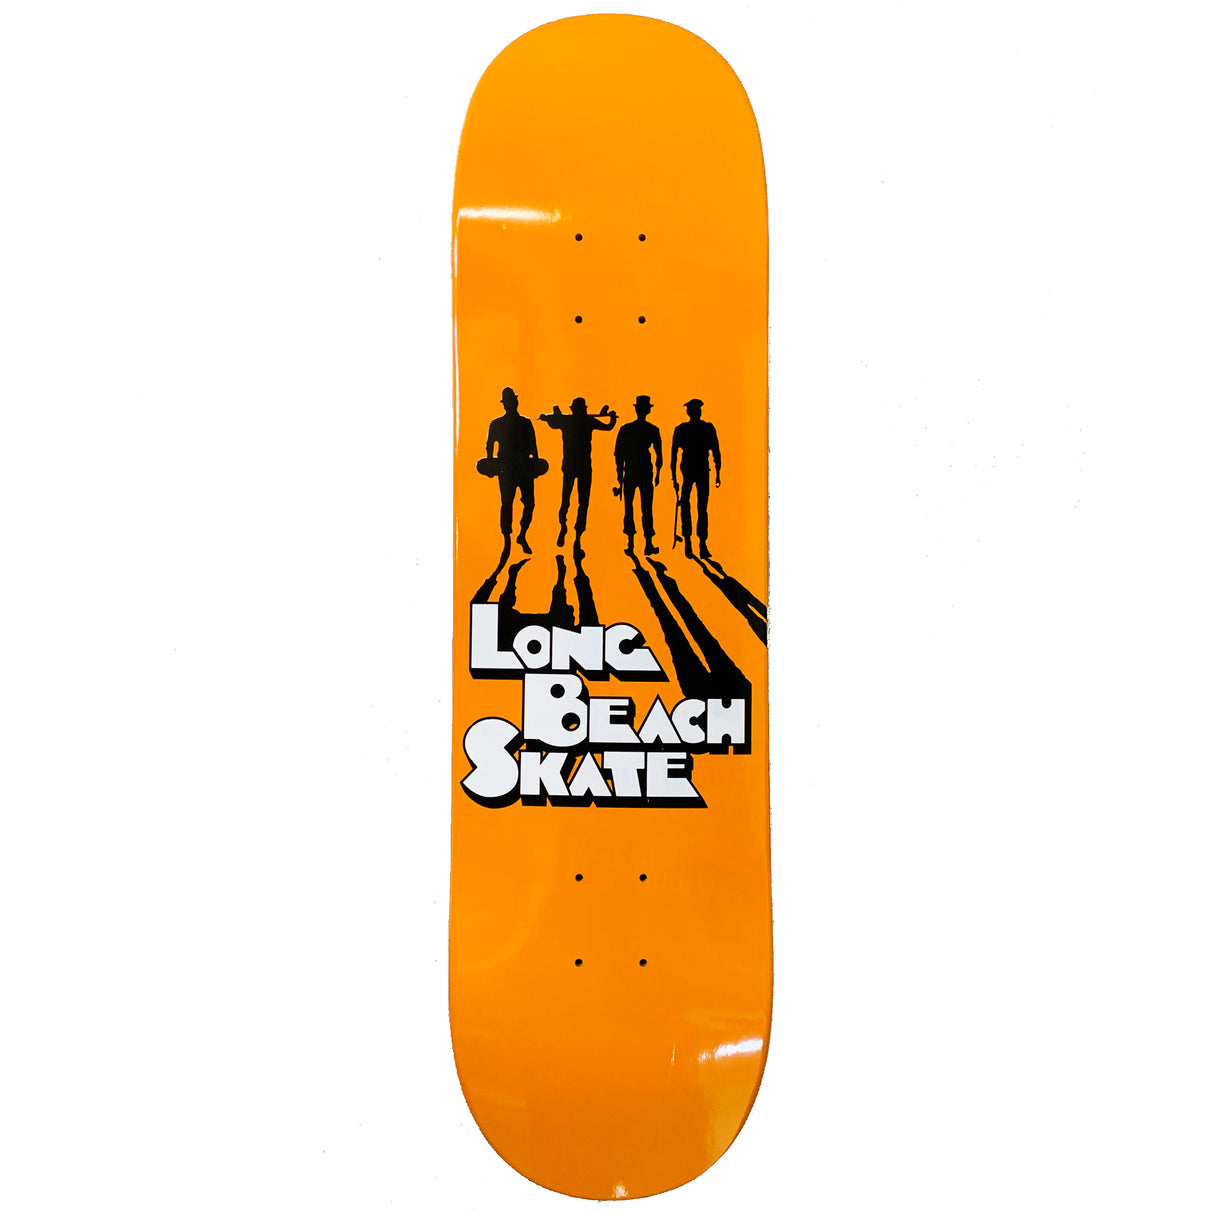 Long Beach Skate Co. Like Clockwork 8.62" Skateboard Deck